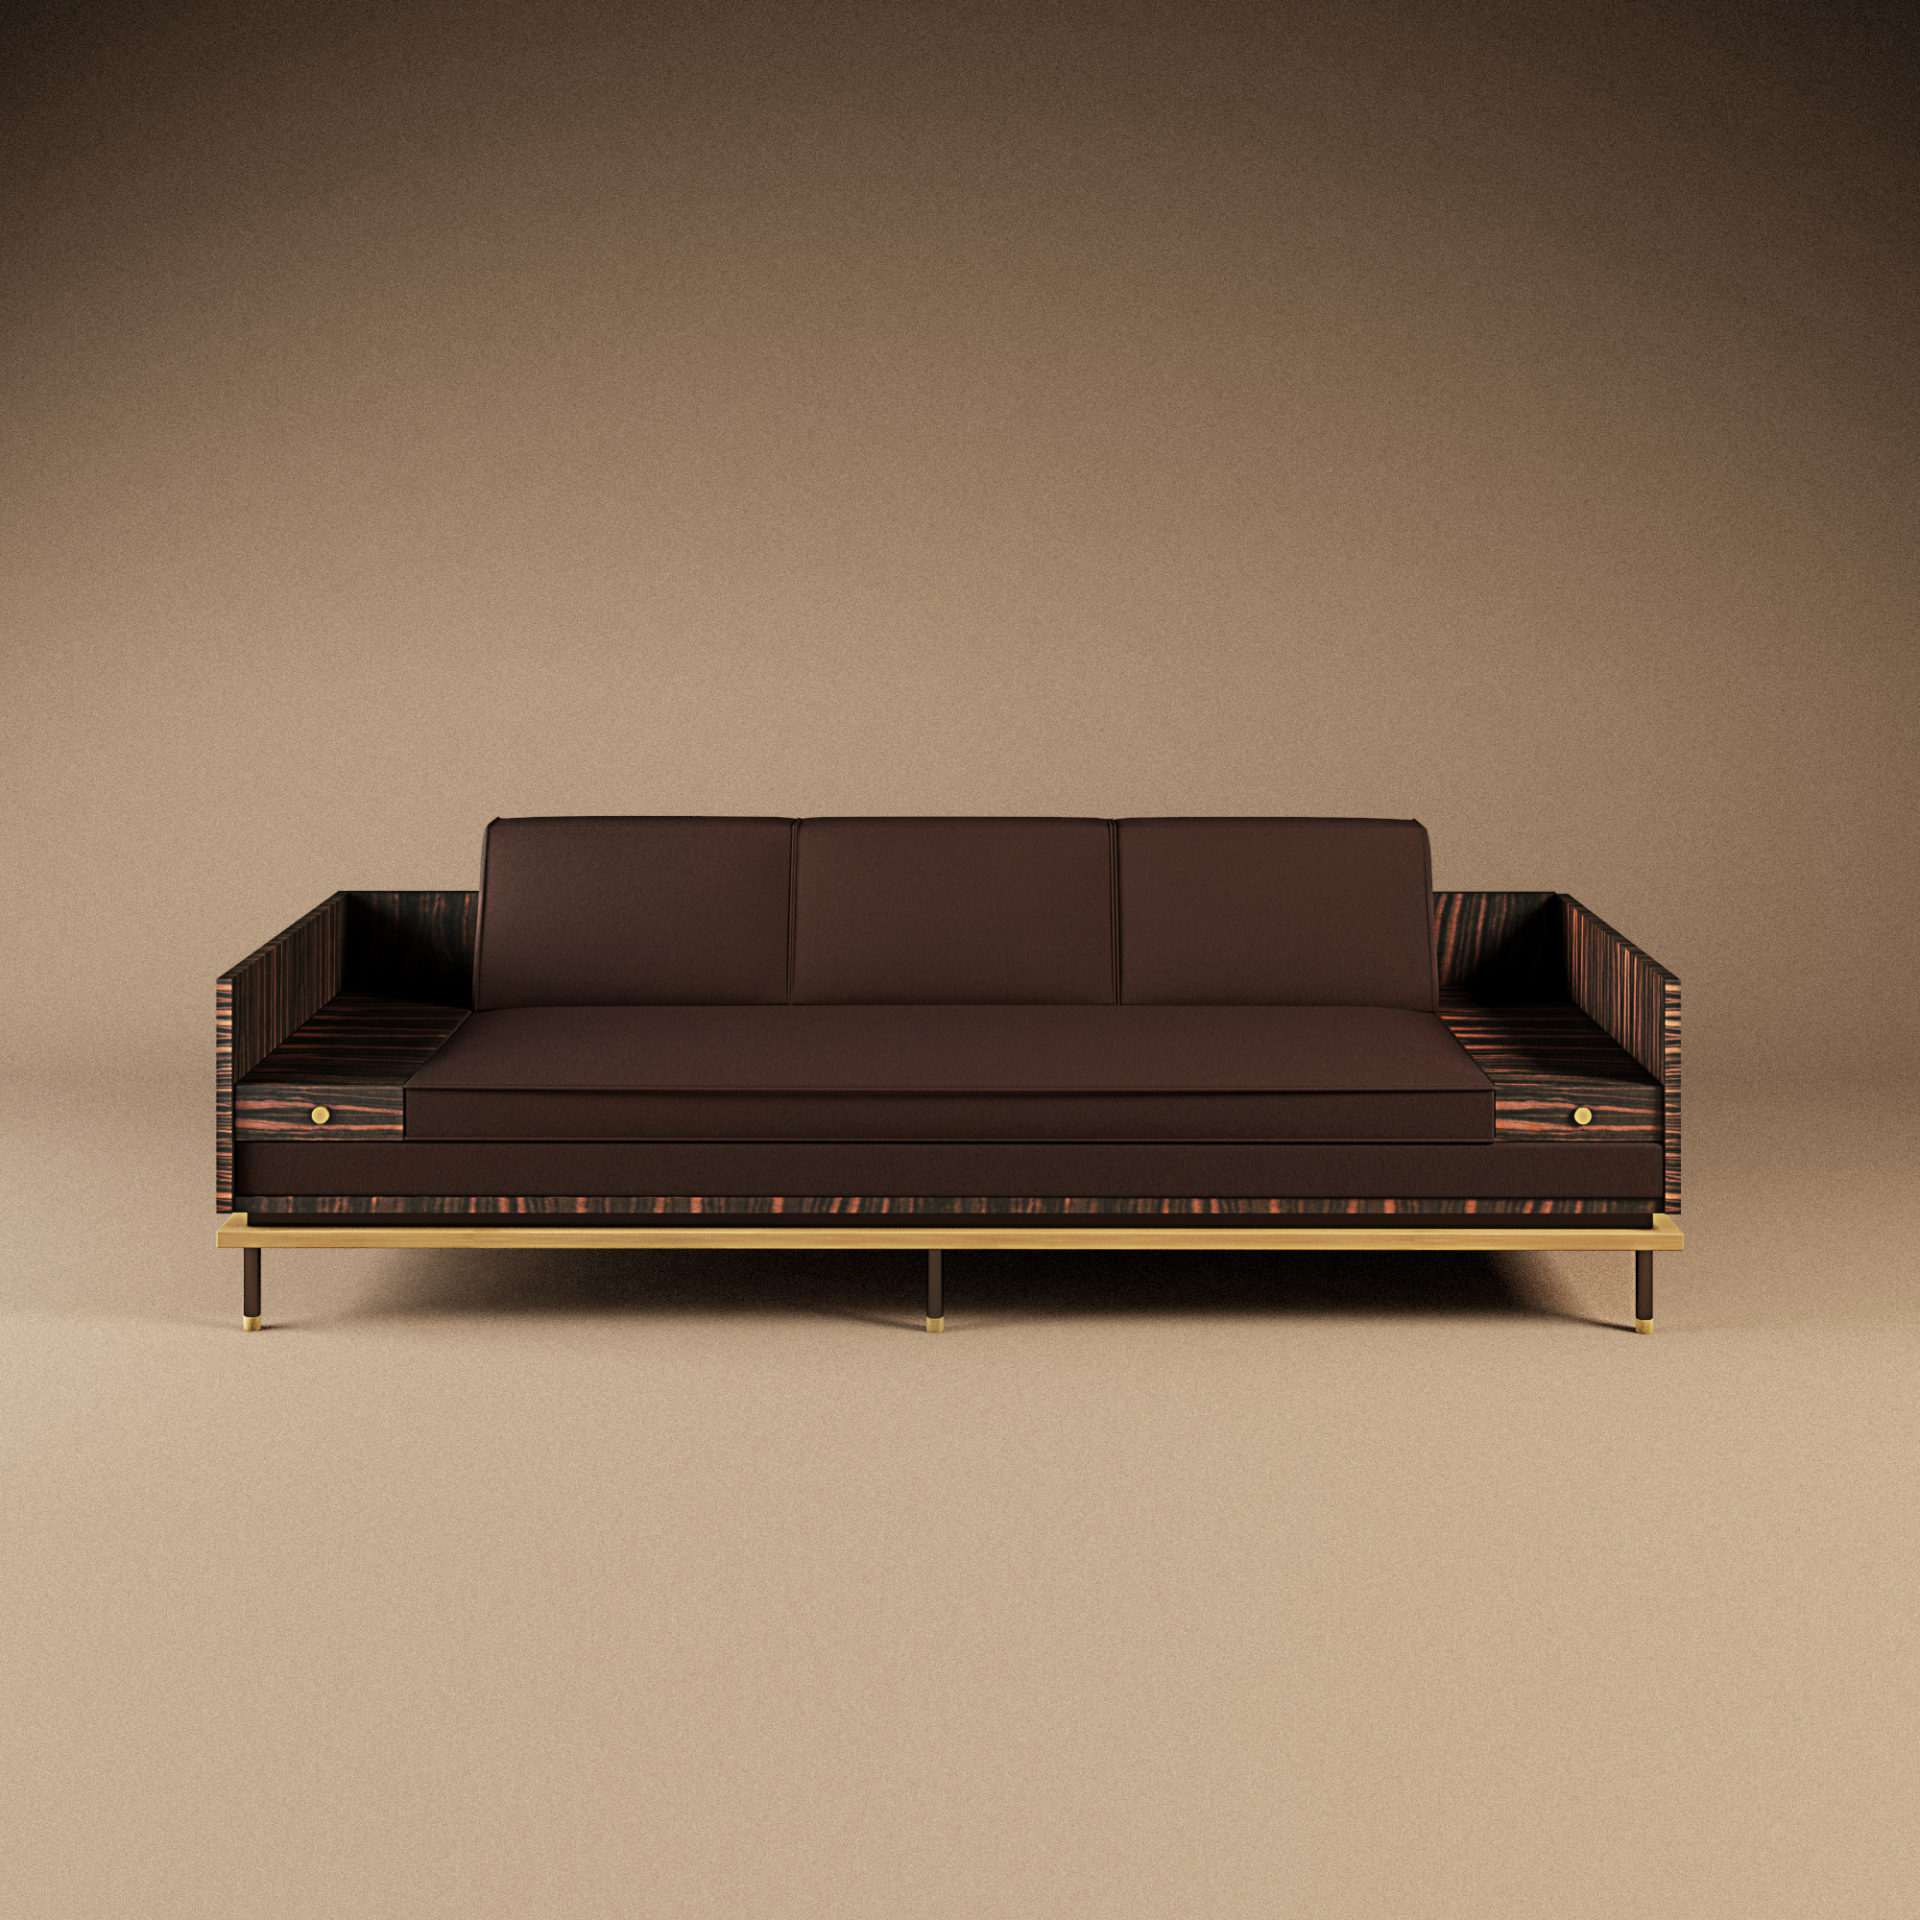 Asheville sofa - modern living roo